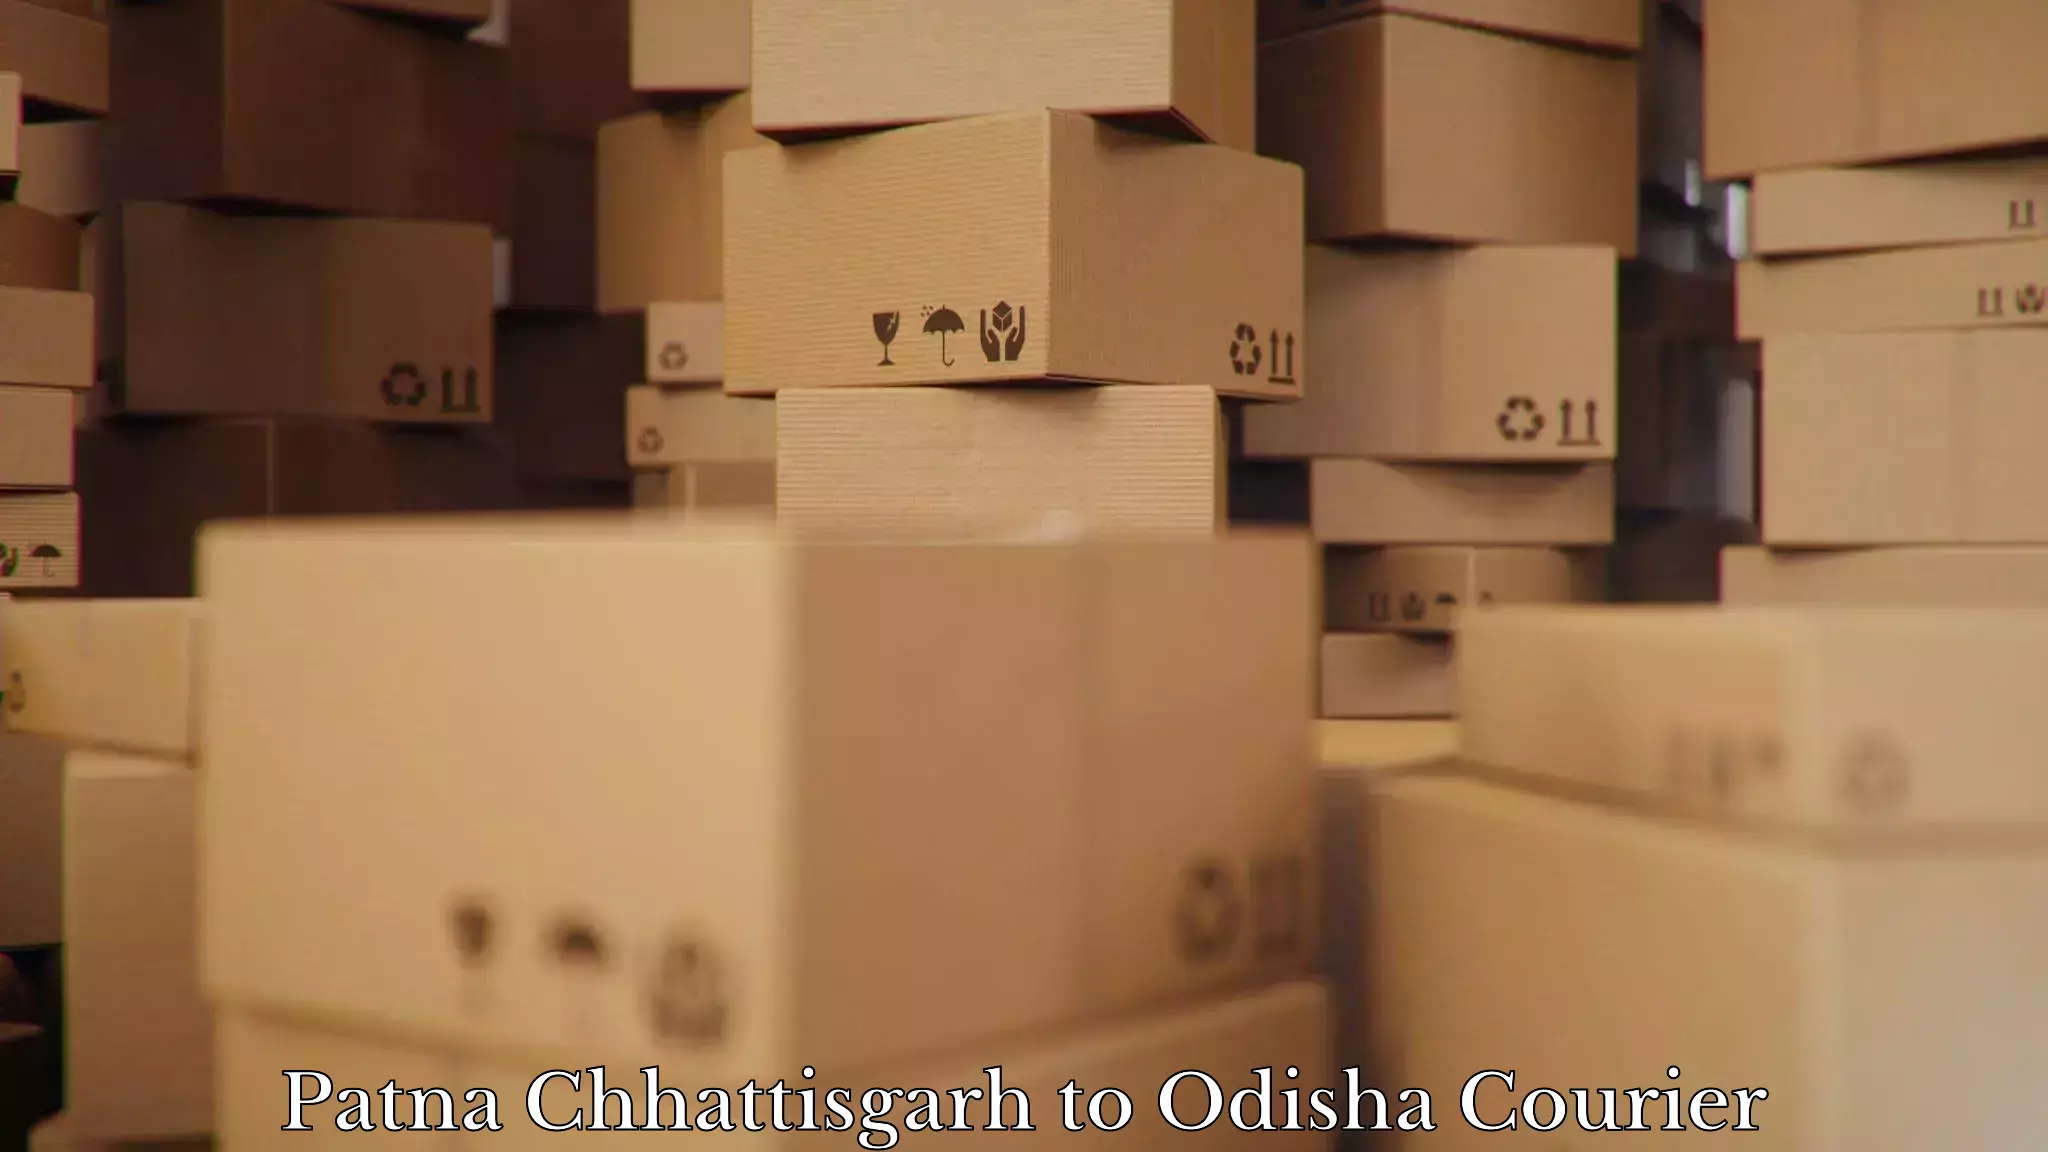 Tailored relocation services Patna Chhattisgarh to Odisha